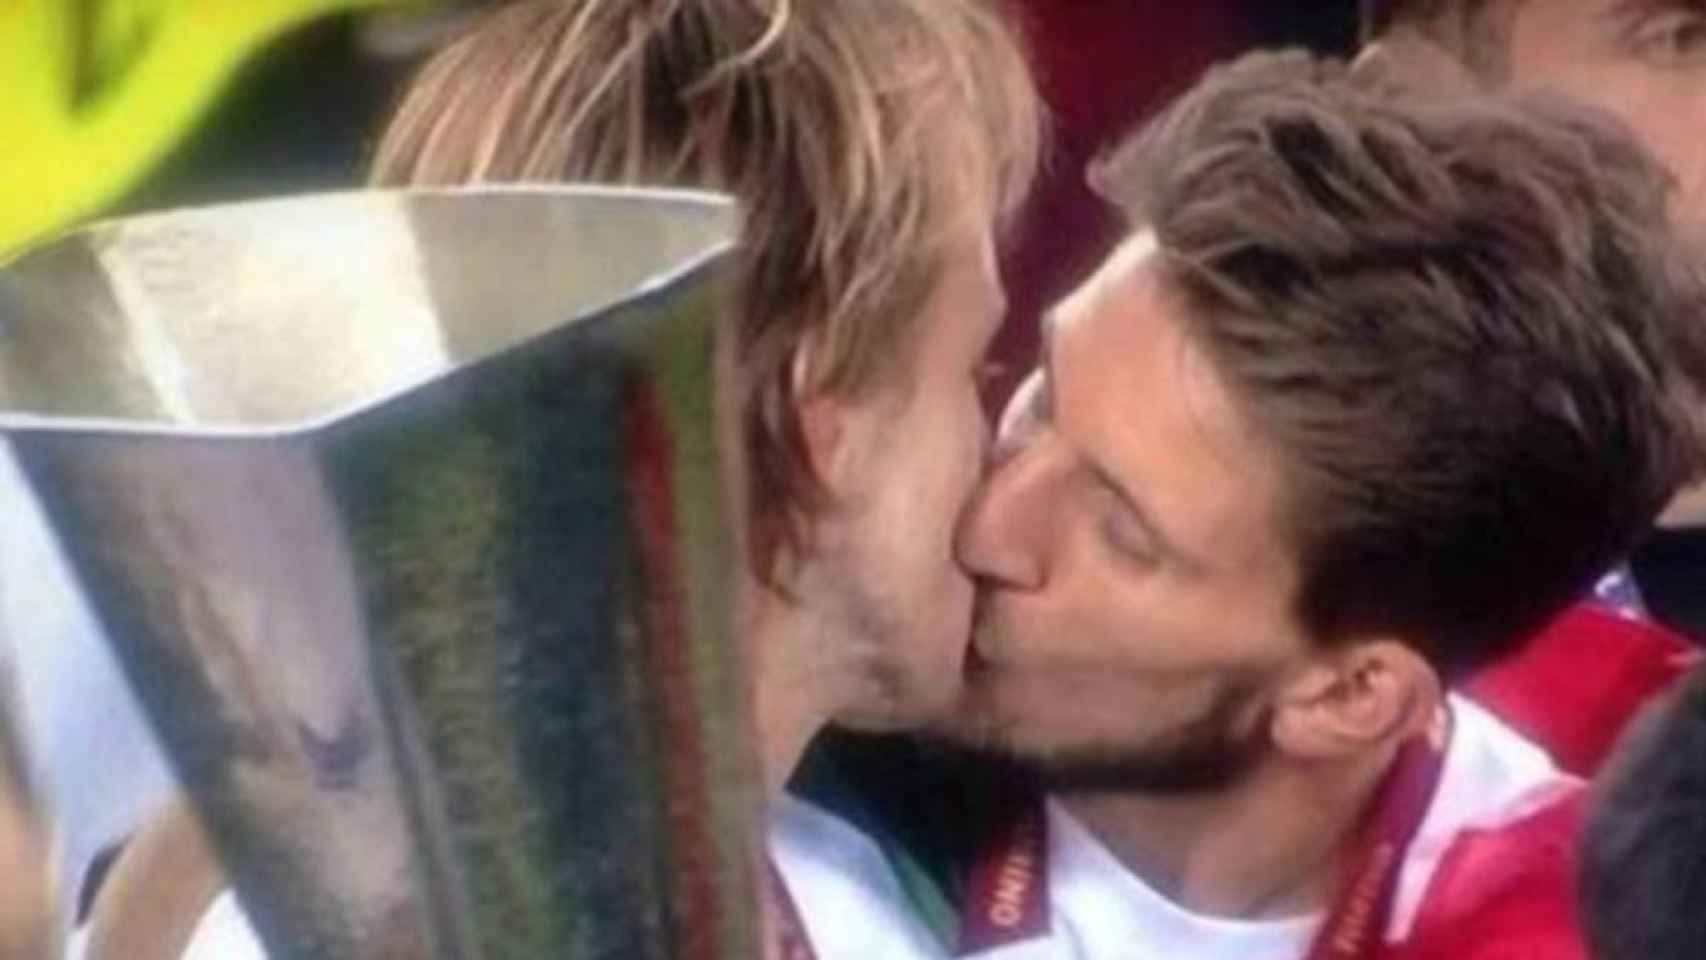 Beso entre Rakitic y Carriço durante la celebración del Sevilla de la Europa League